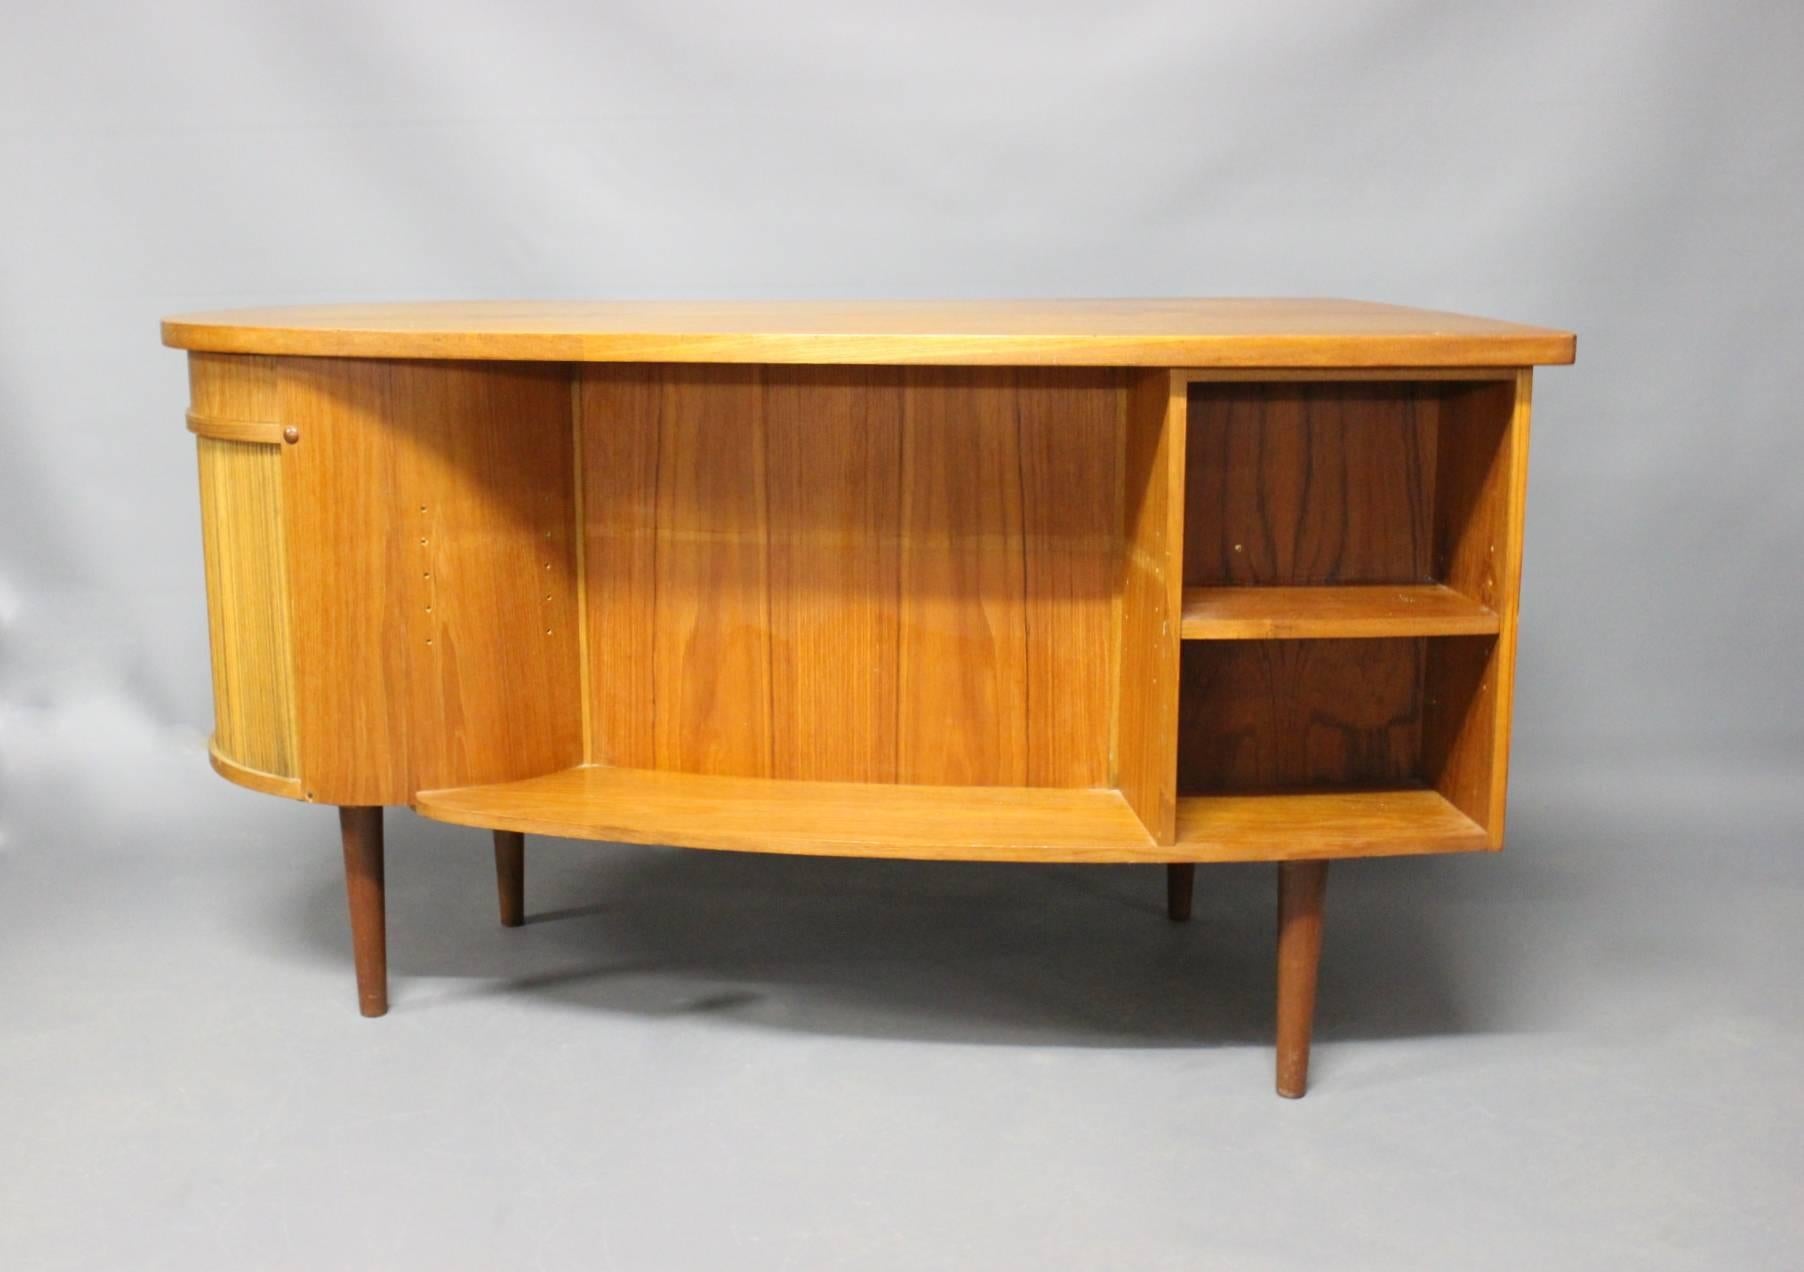 Scandinavian Modern Desk in Teak Designed by Kai Kristiansen, Danish Design from the 1960s